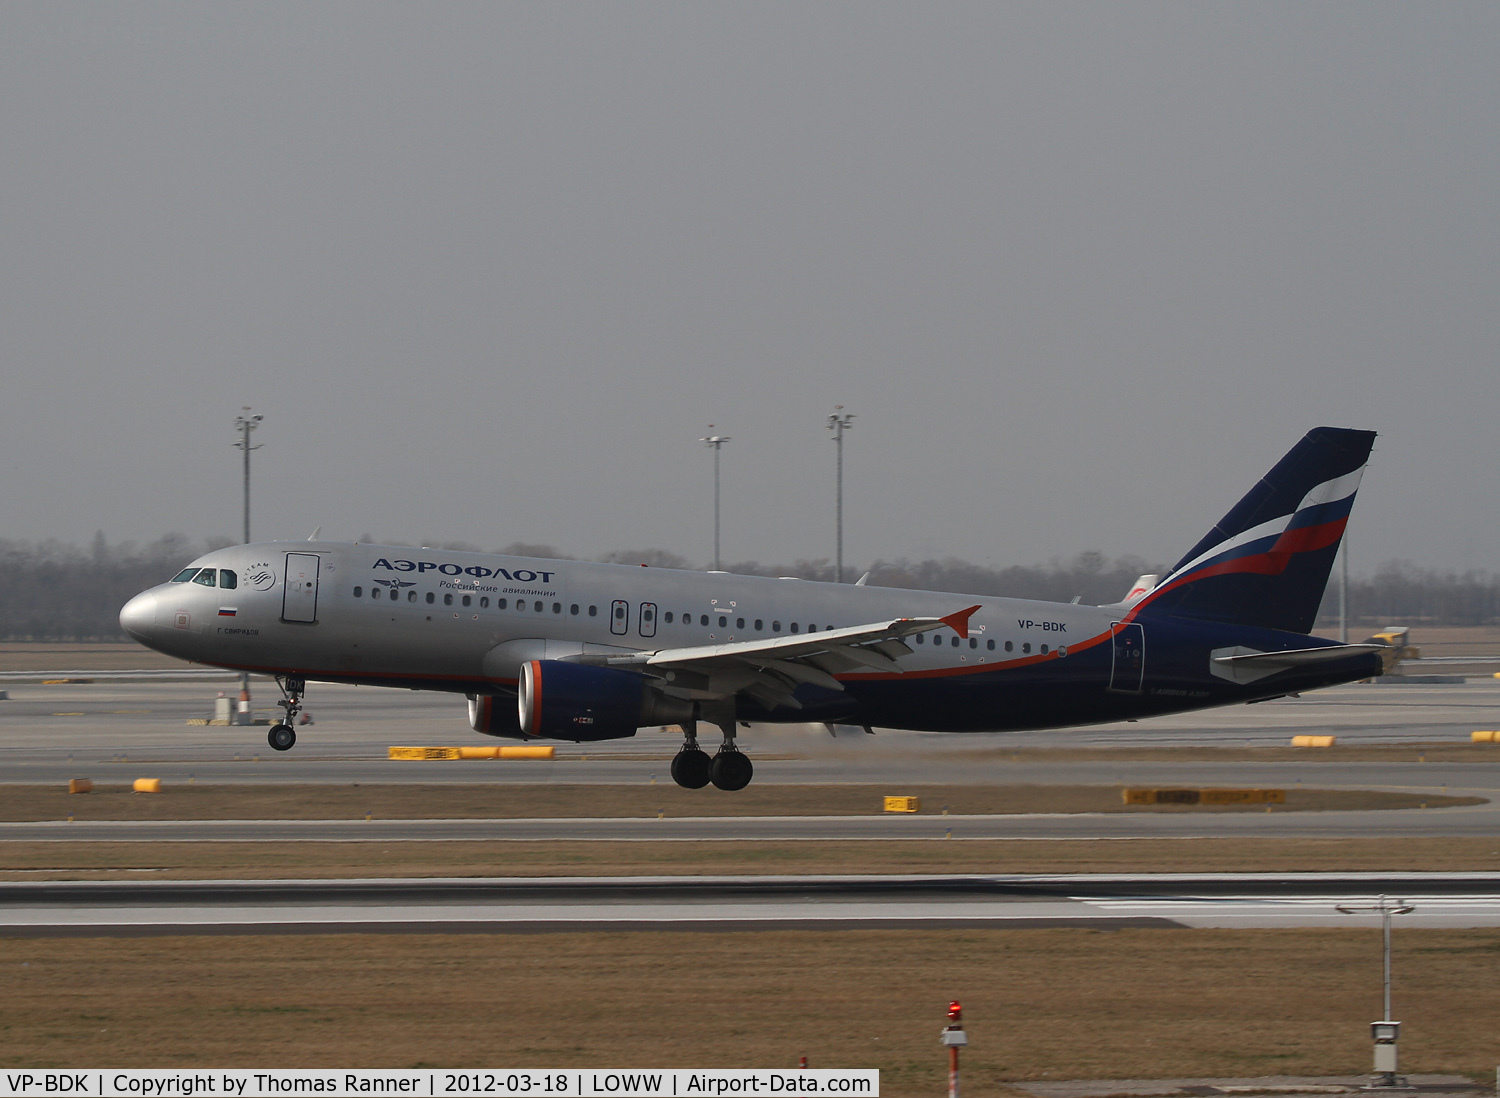 VP-BDK, 2003 Airbus A320-214 C/N 2106, Aeroflot Airbus A320